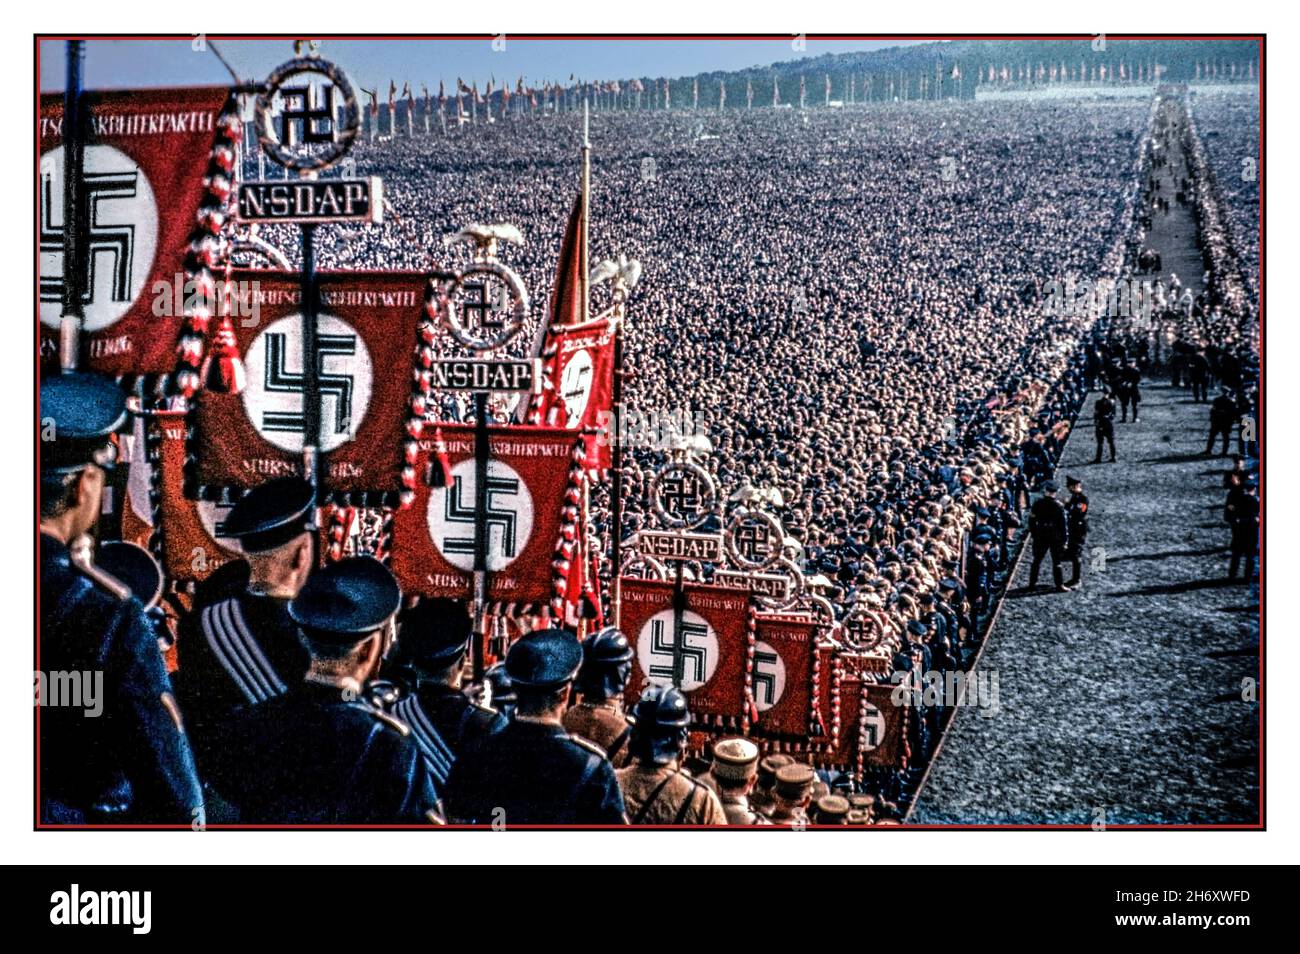 1930s Germania nazista Rally di Norimberga a colori, con bandiere e bandiere nell'affollato auditorium principale all'aperto con migliaia di tifosi nazisti immagine di colore raro, con bandiere NSDAP ed emblema swastika in primo piano. Il Partito nazista ufficialmente il Partito Nazionale Socialista Tedesco dei lavoratori (tedesco: Nationalsozialistische Deutsche Arbeiterpartei o NSDAP), era un partito politico di estrema destra in Germania attivo tra il 1920 e il 1945, che creava e sosteneva l'ideologia e la propaganda del nazismo e del Partito nazista, guidato dal Führer Adolf Hitler nazista tedesco Foto Stock